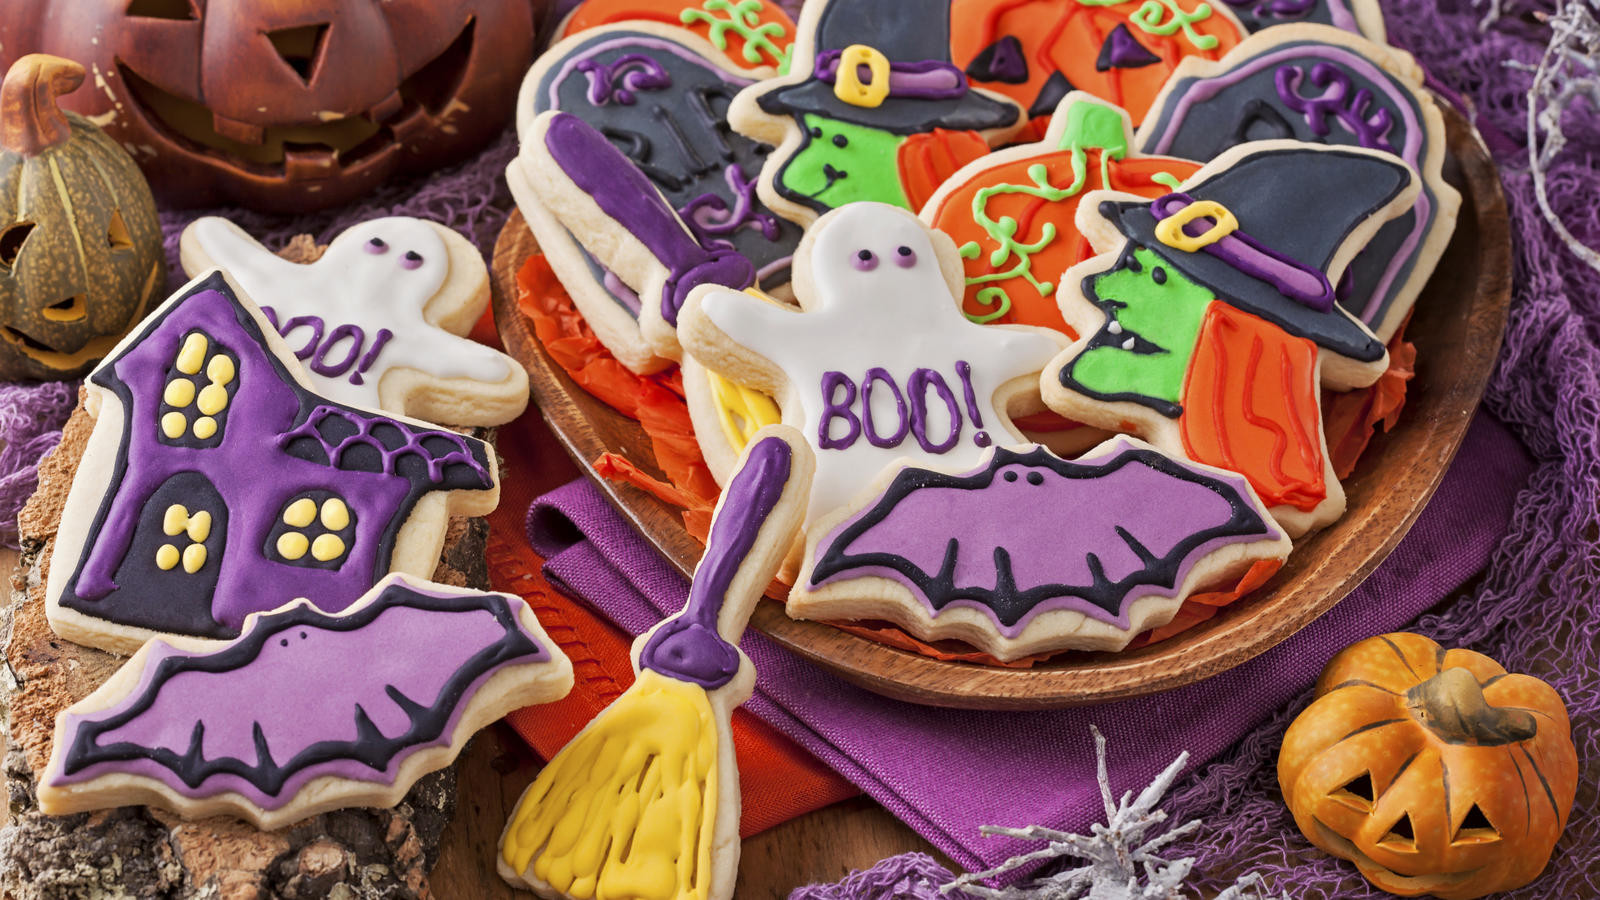 Scary Halloween Cookies
 Spooky Halloween cookies